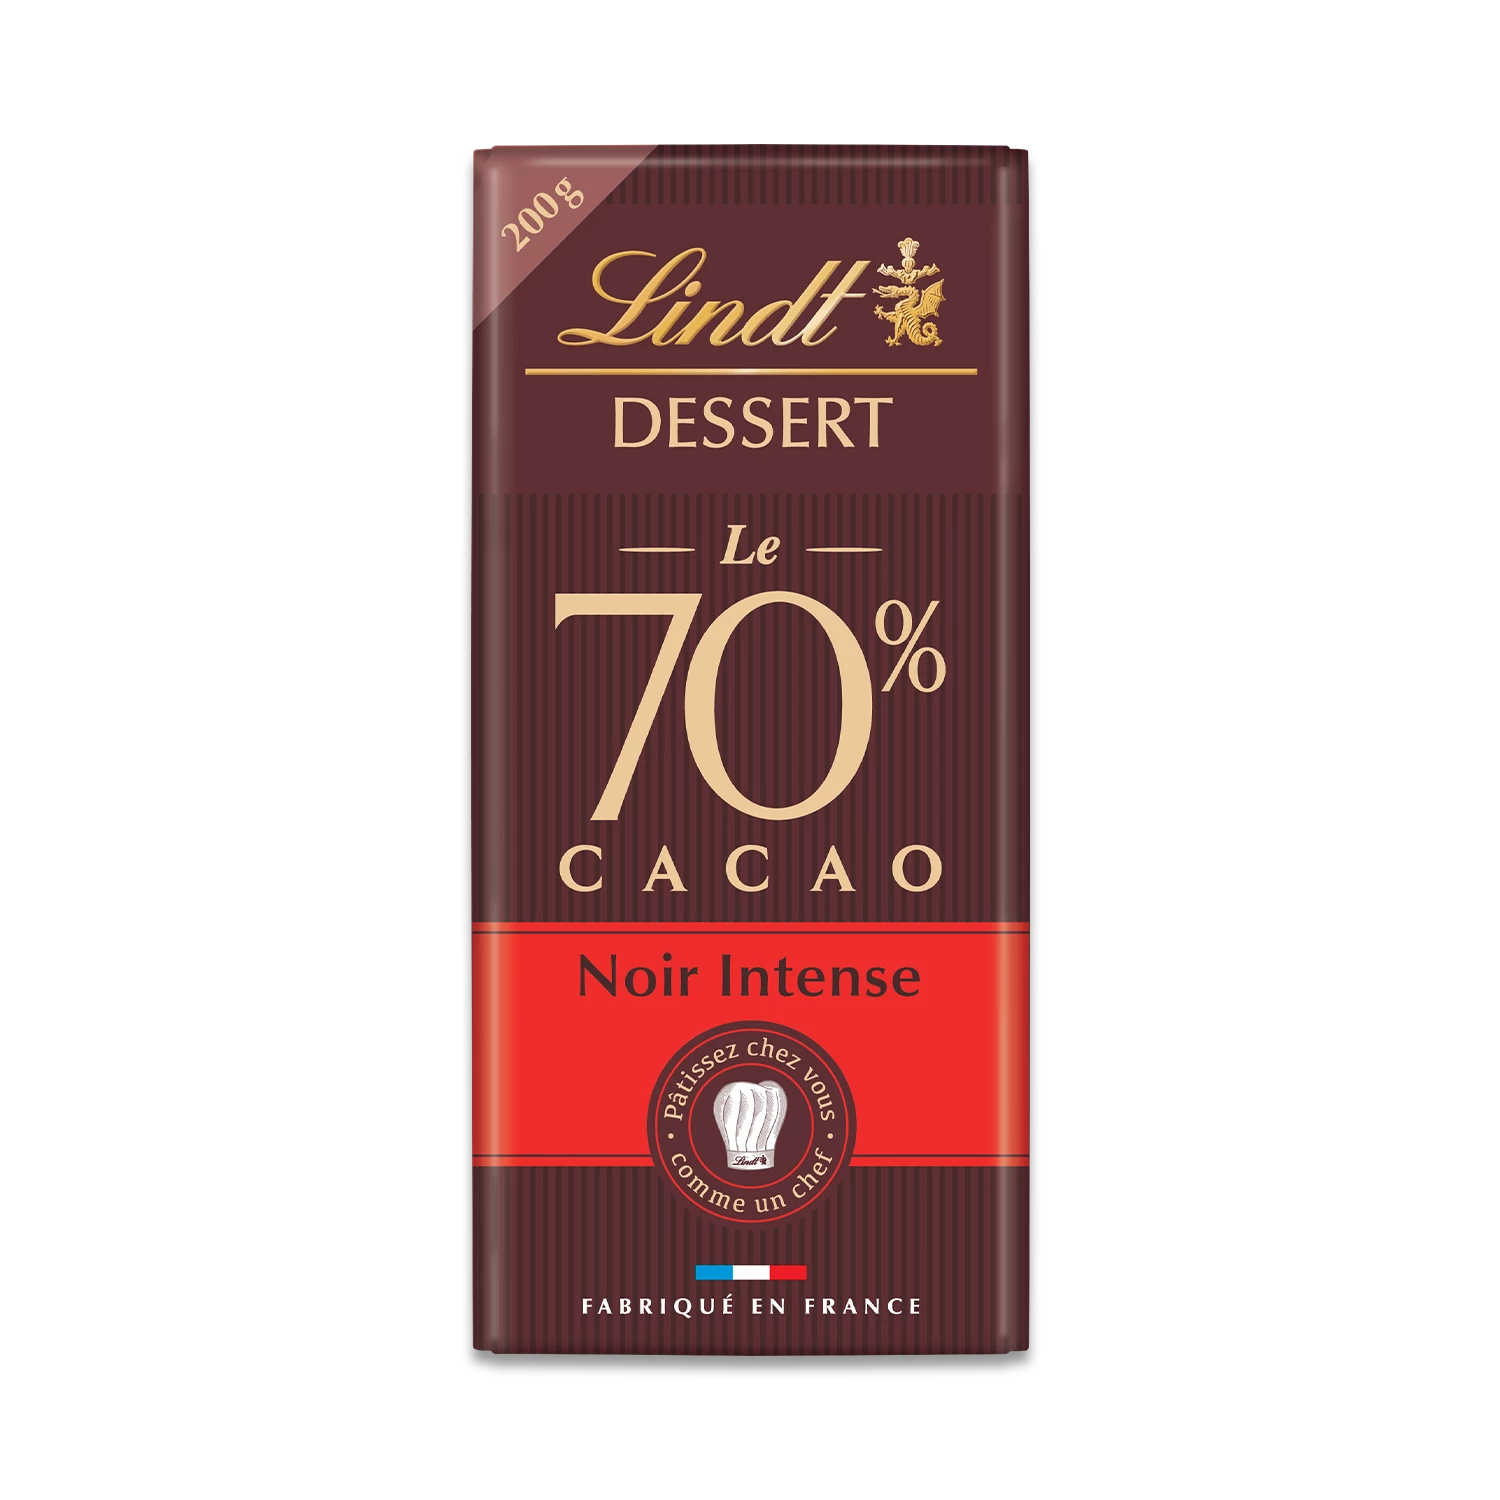 Dessert Fondente Cacao Intenso 70% Tavoletta 200 G - LINDT